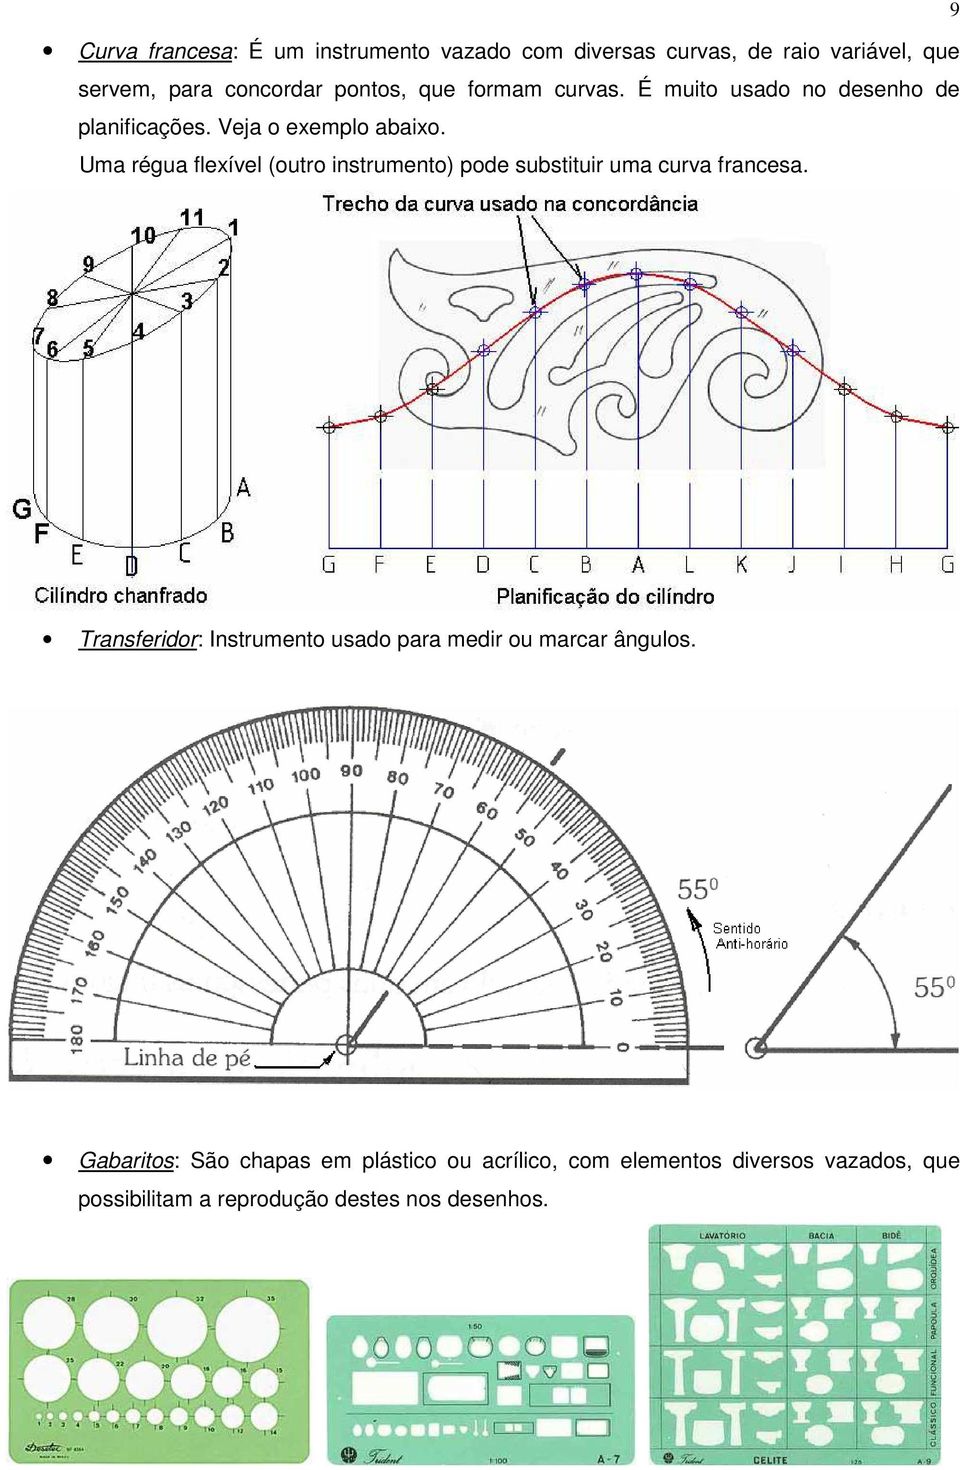 Uma régua flexível (outro instrumento) pode substituir uma curva francesa.